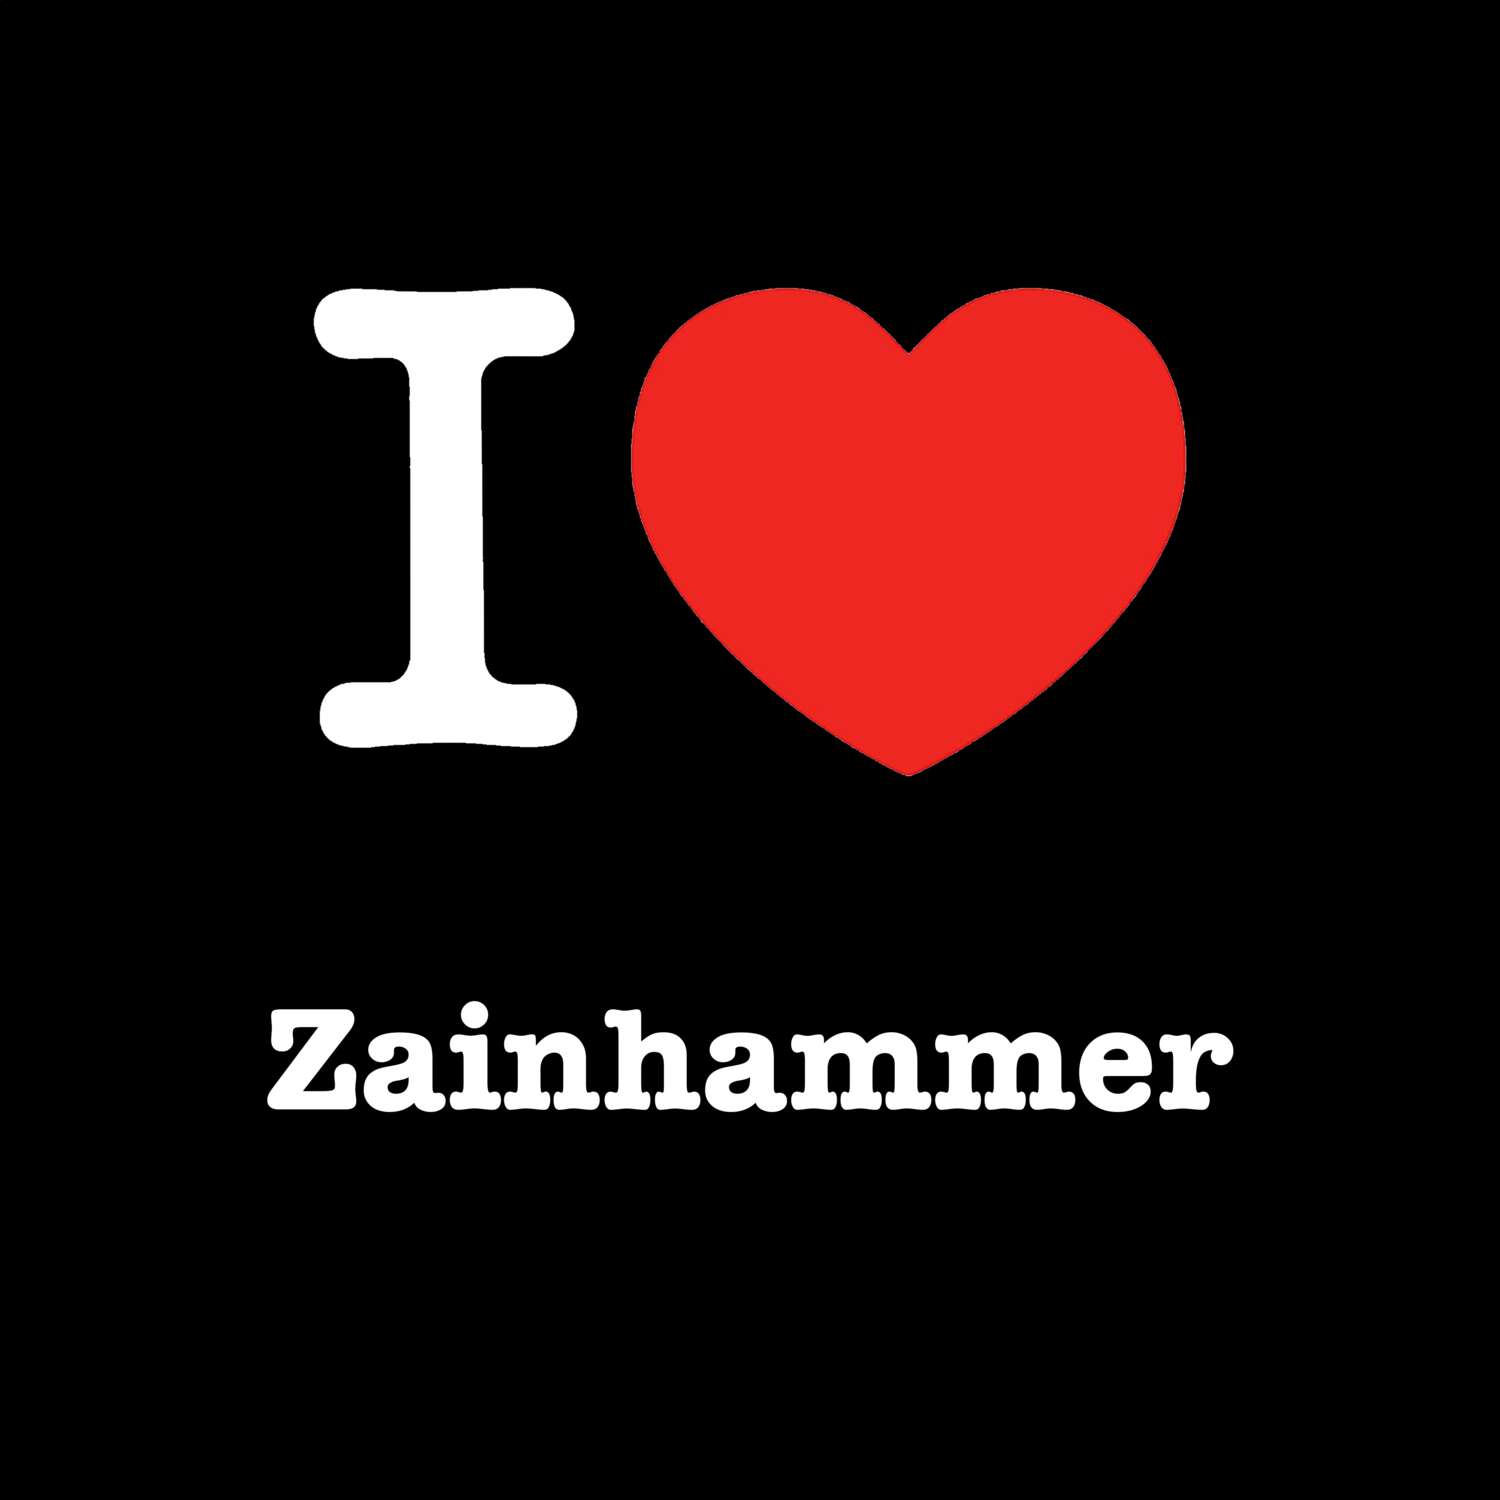 Zainhammer T-Shirt »I love«